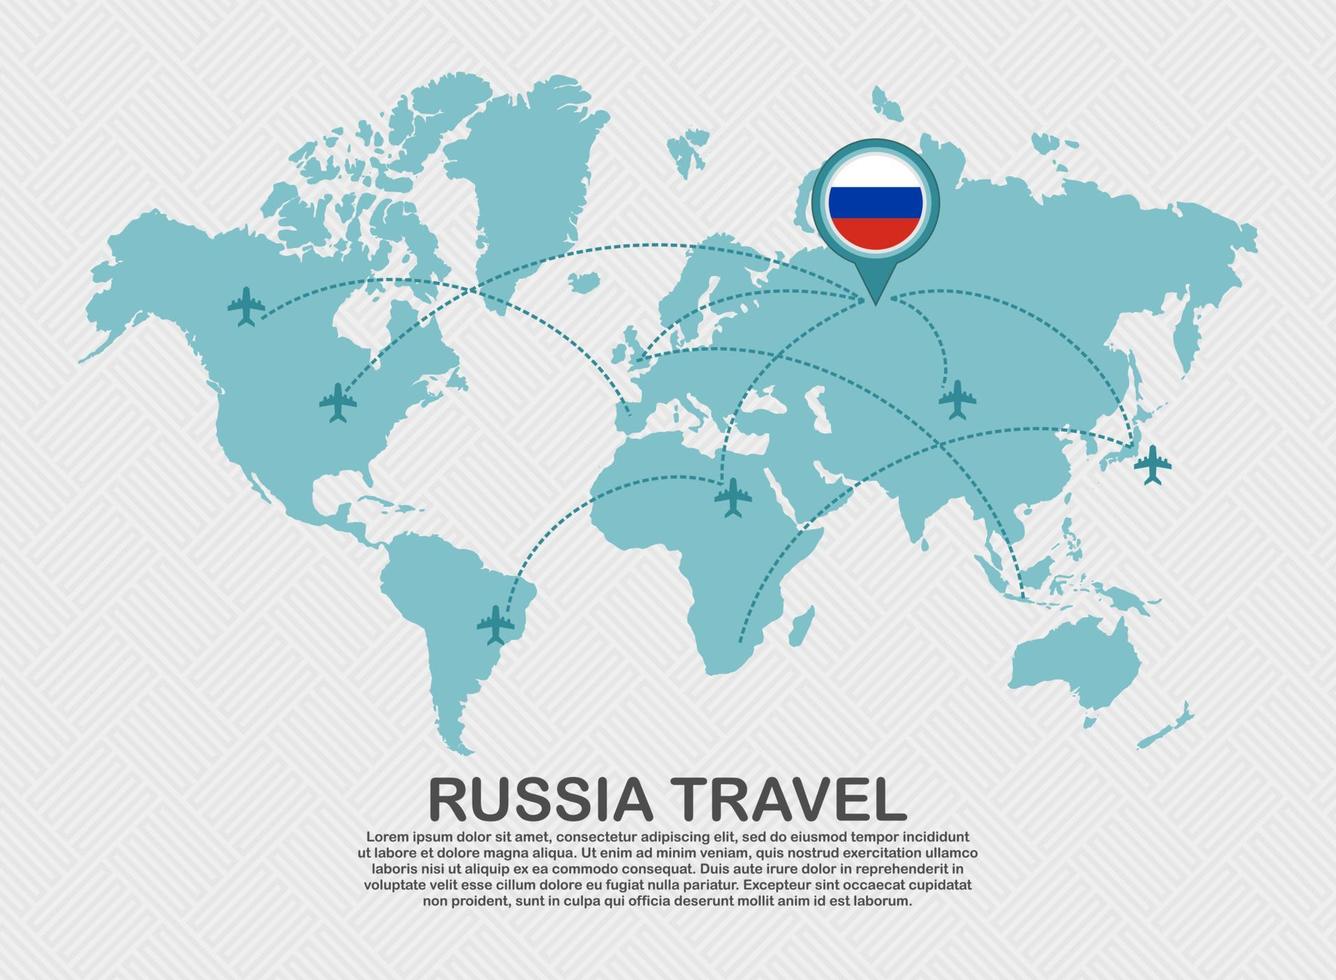 resa till ryssland affisch med värld Karta och flygande plan rutt företag bakgrund turism destination begrepp vektor